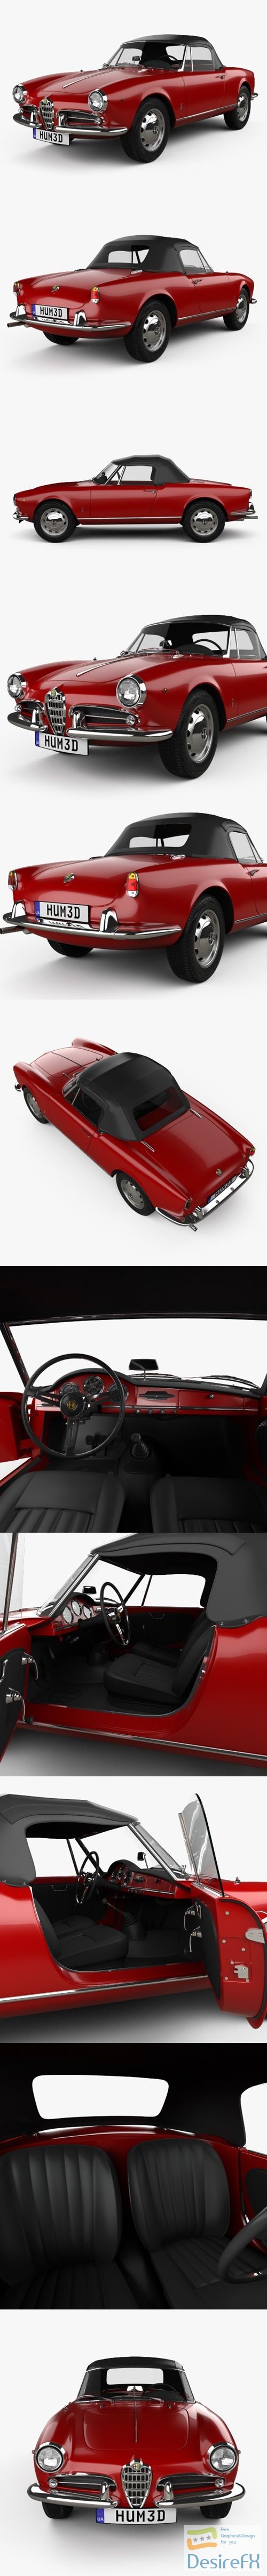 Alfa Romeo Giulietta spider with HQ interior 1955 3D Model